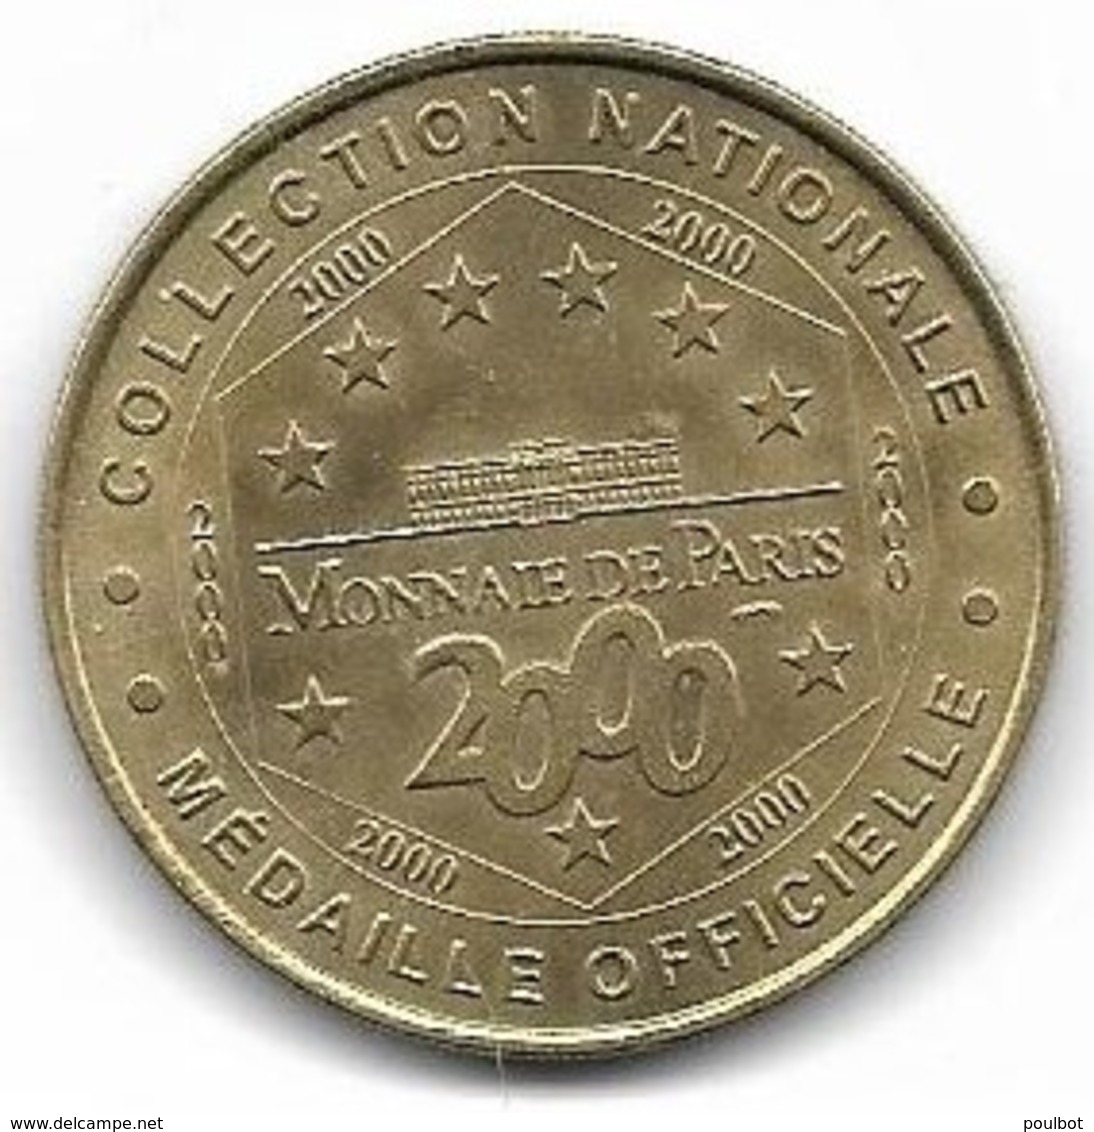 Monnaie De Paris La Cité Des Sciences 2000 - 2000